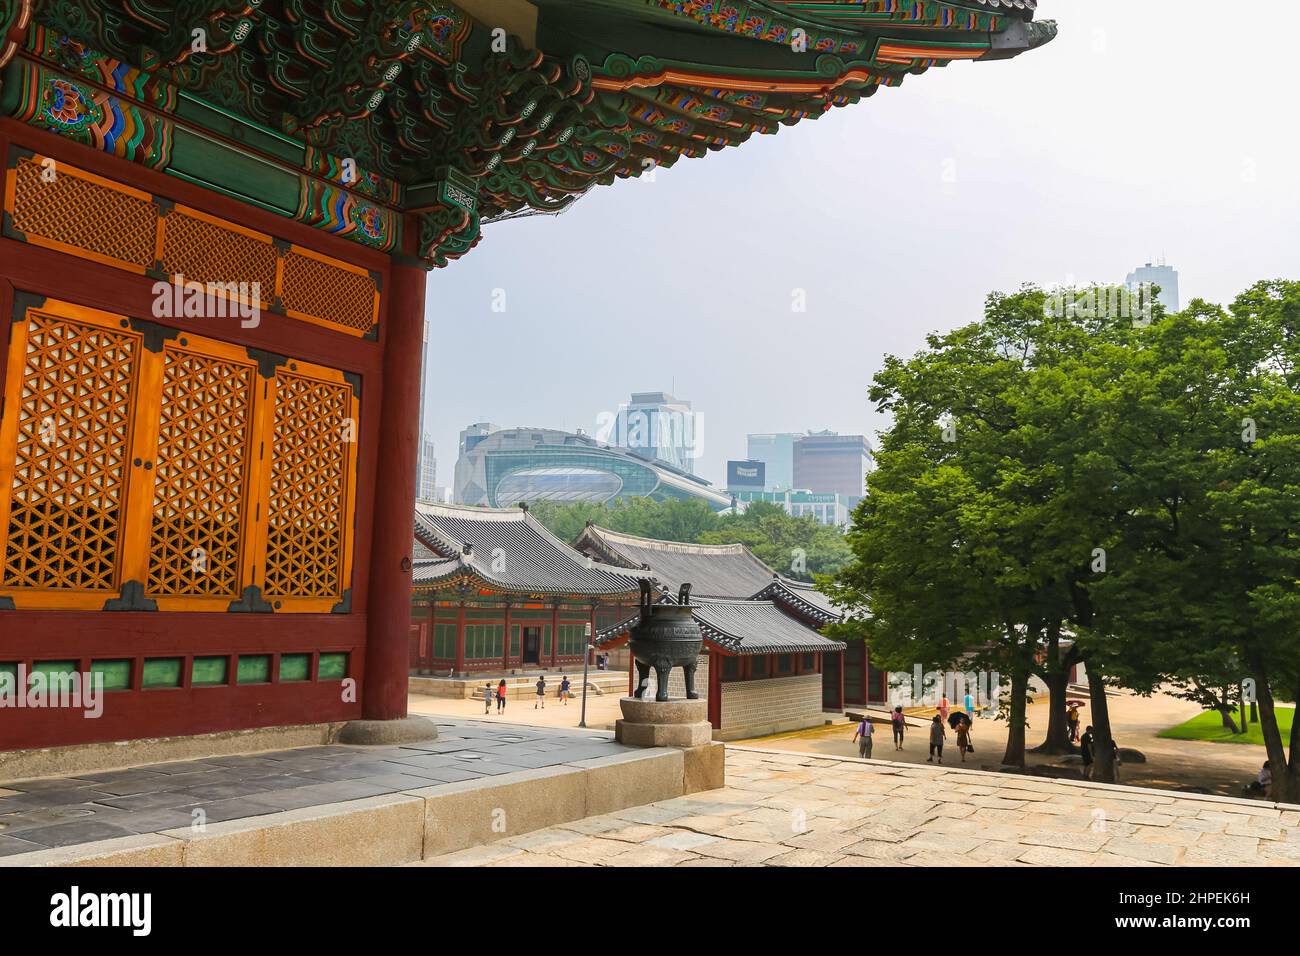 Seoul, Südkorea - 25. Juli 2020: Im Gyeongbokgung Palast. Wichtigster königlicher Palast der Joseon-Dynastie, kulturelles Erbe Südkoreas. Stockfoto